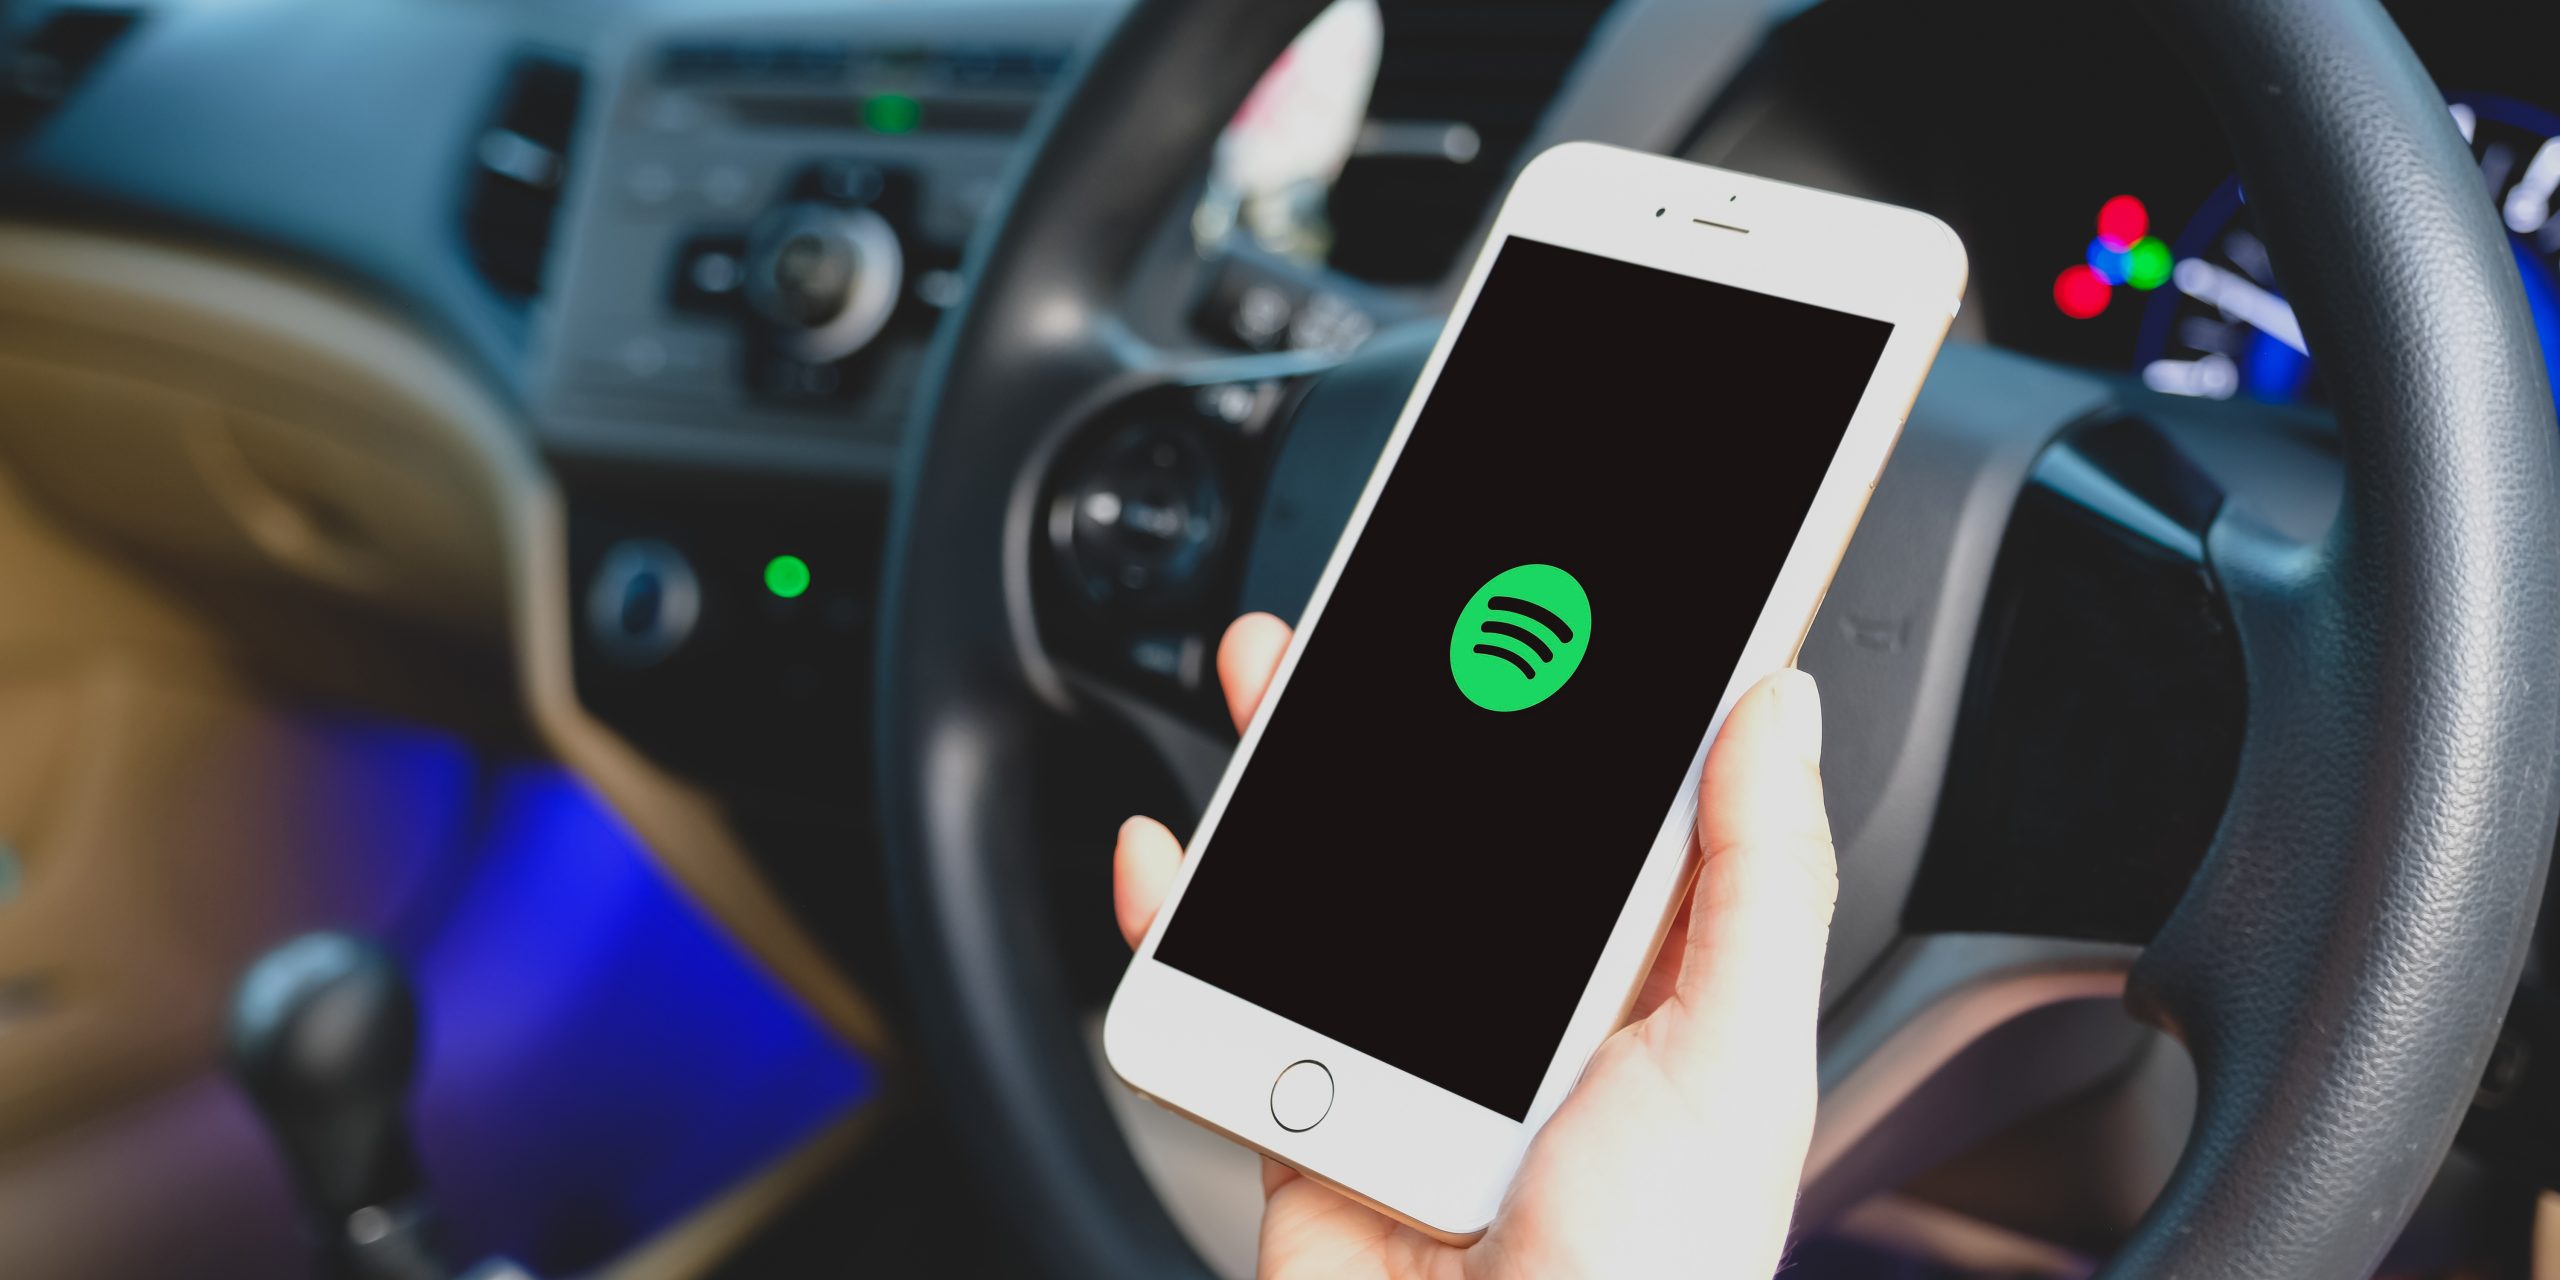 Как слушать музыку в машине через телефон: доступные способы